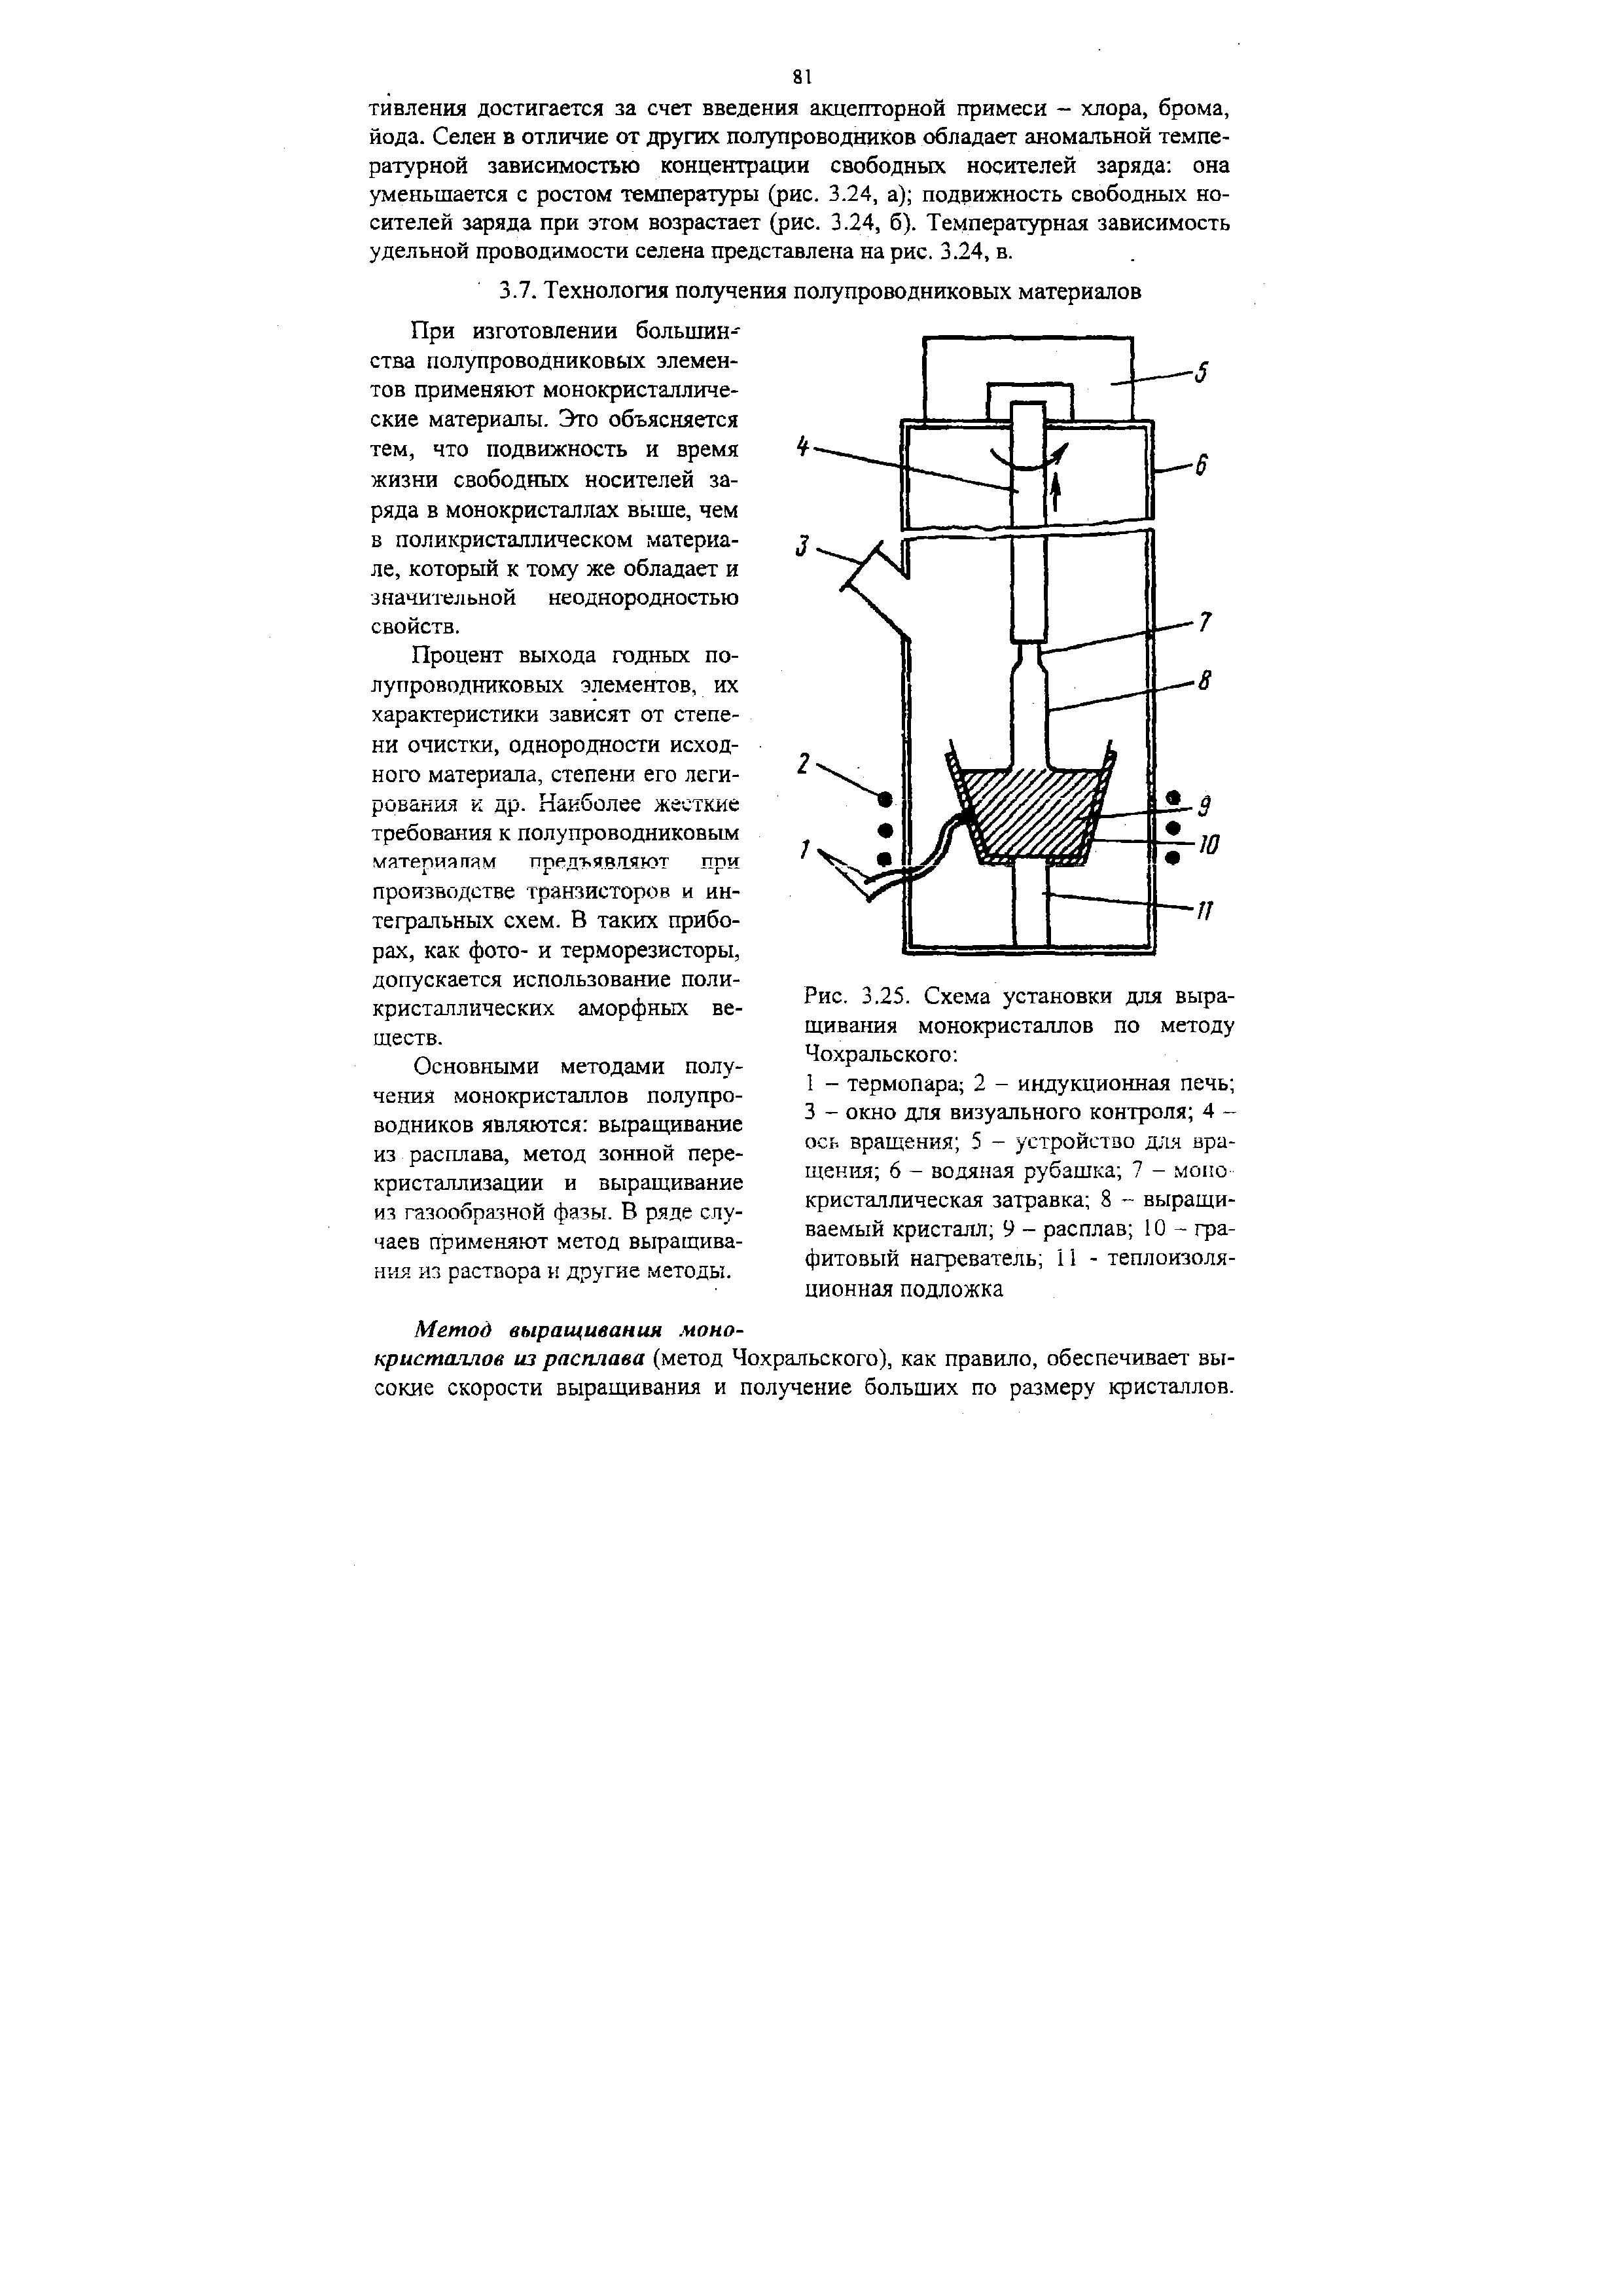 Рис. 3.25. Схема установки для выращивания монокристаллов по методу Чохральского 
